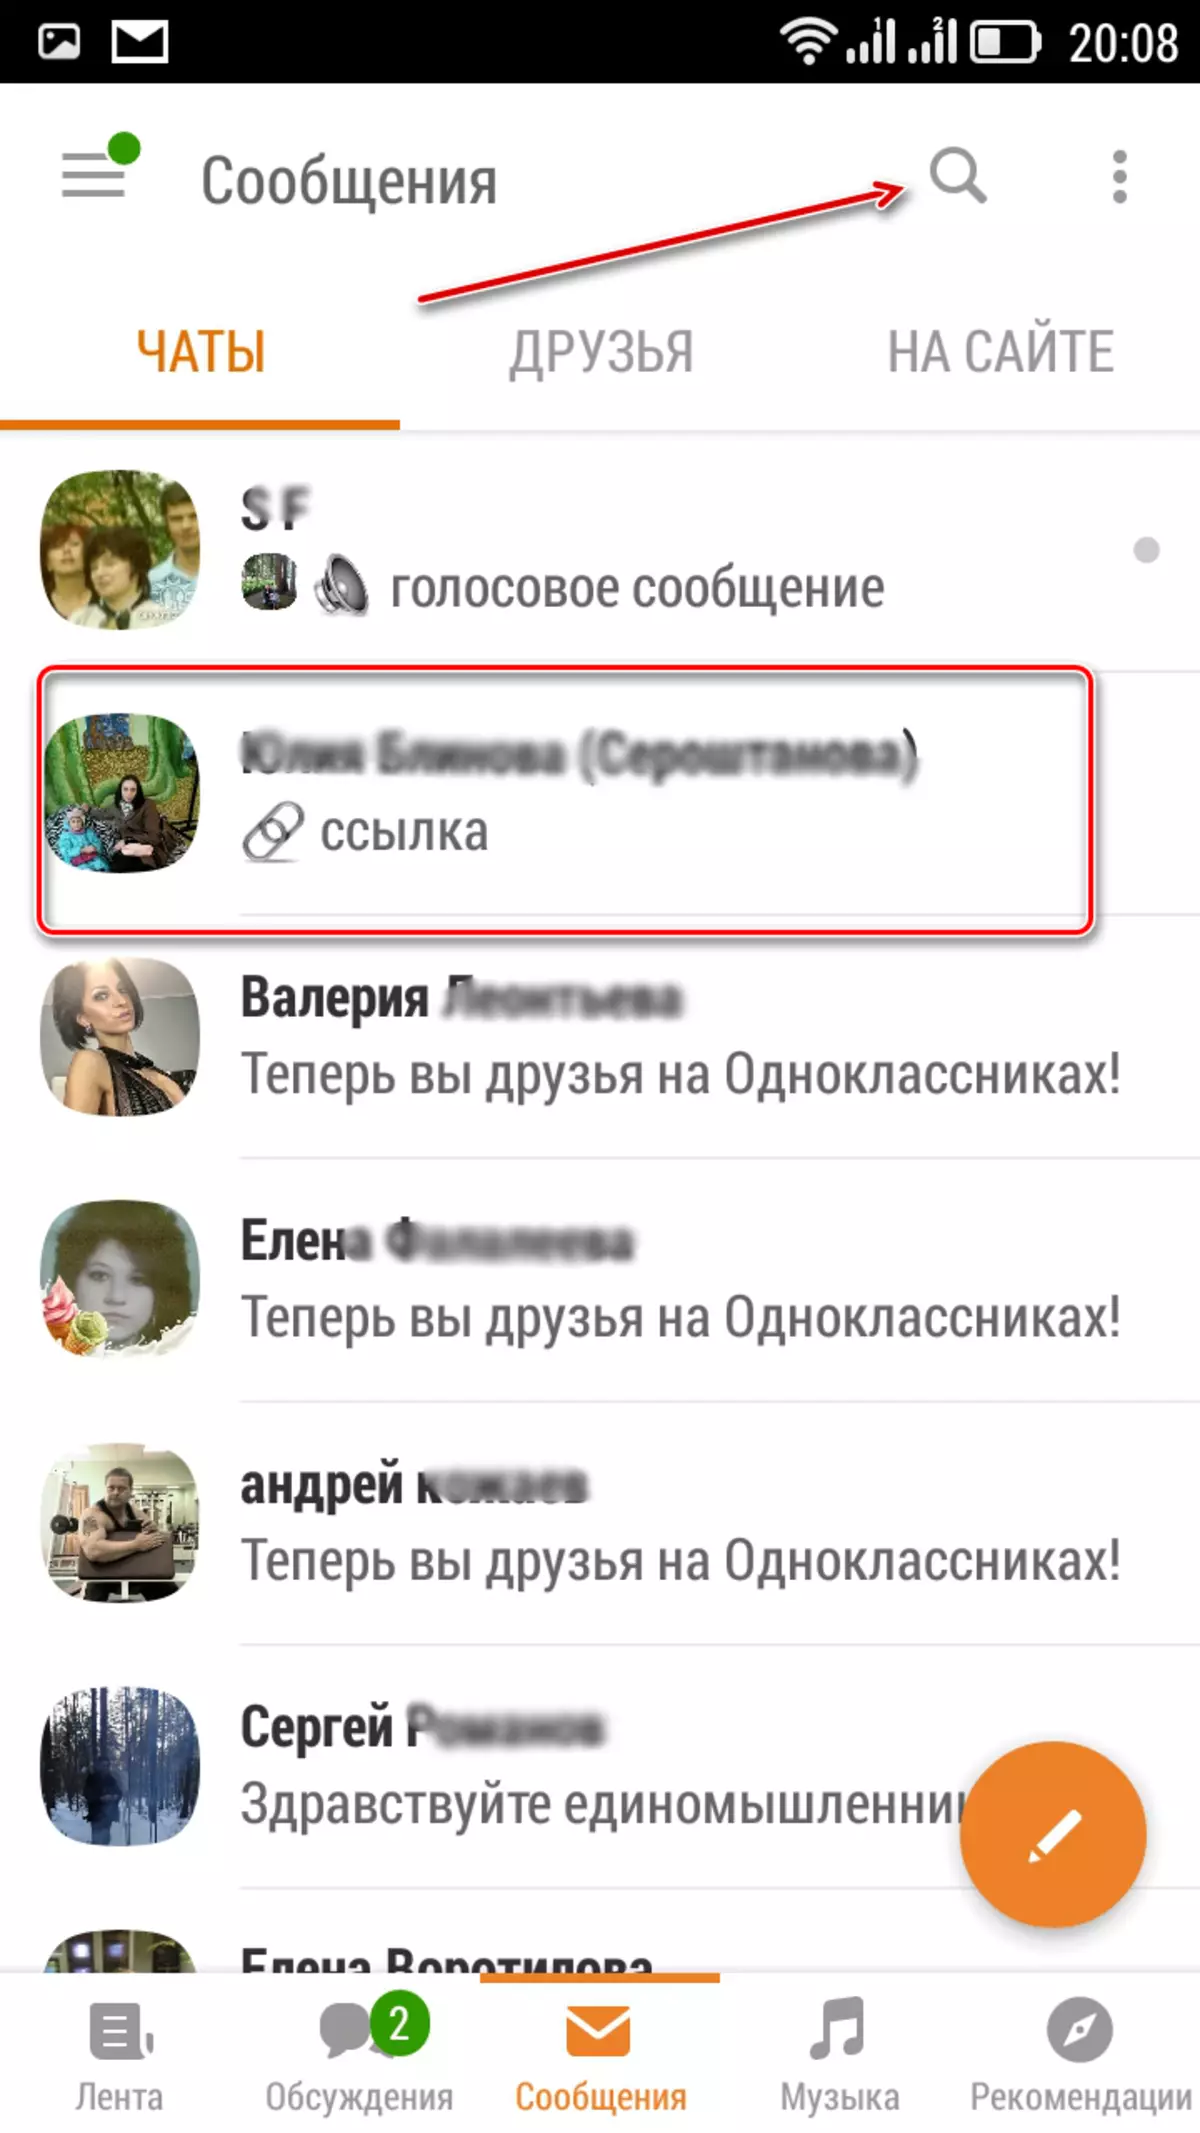 Fitxategi mezuak Odnoklassniki aplikazioetan